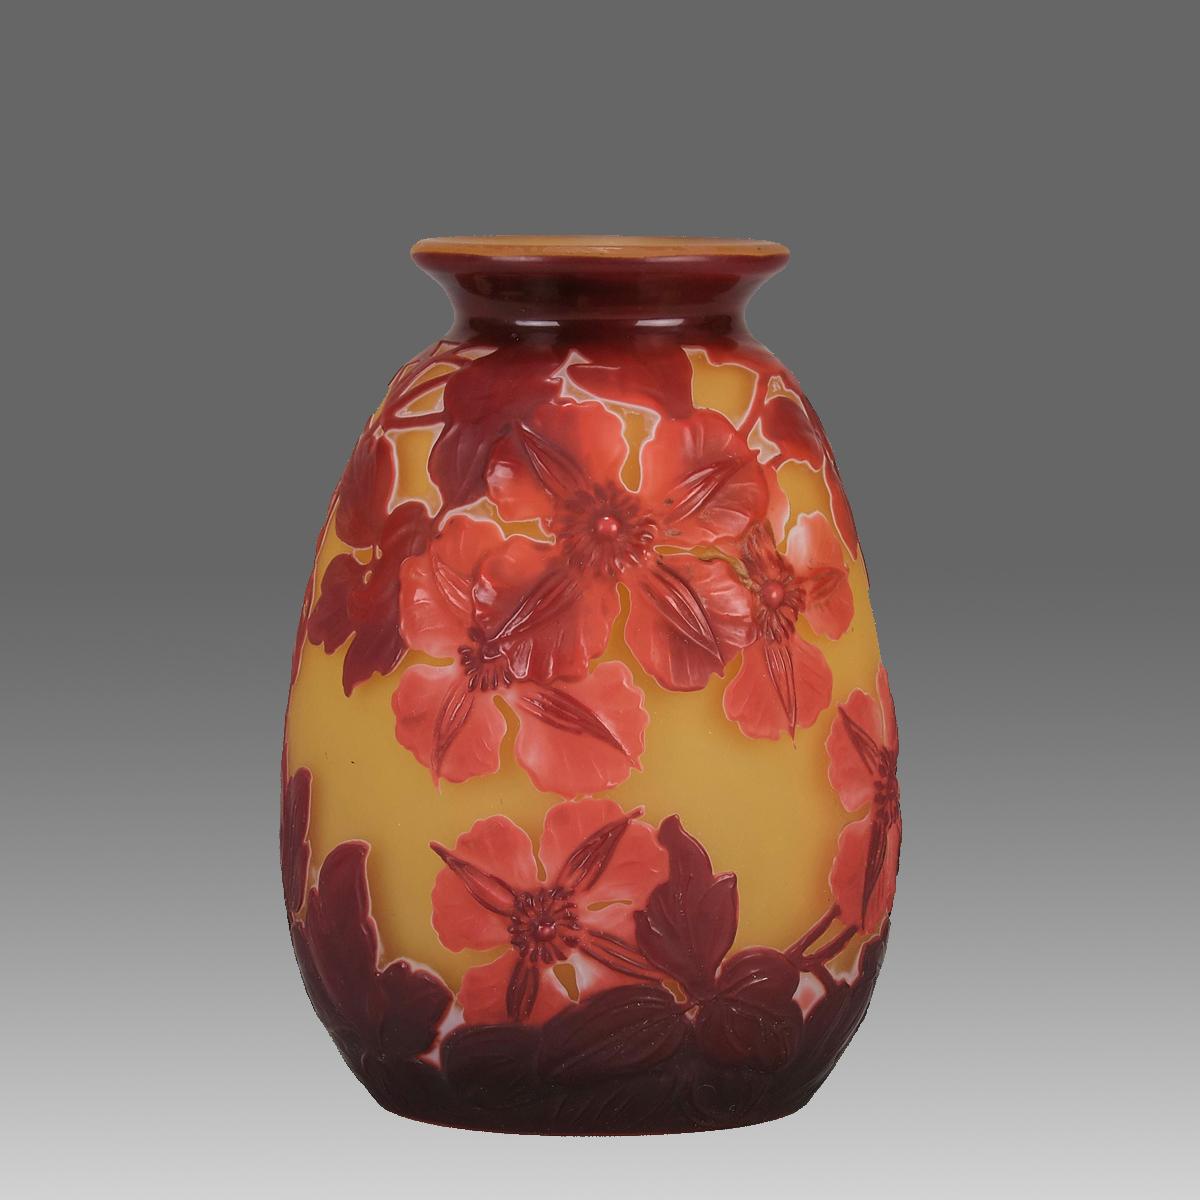 Eine attraktive Souffle-Vase aus französischem Kamee-Glas aus dem späten 19. Jahrhundert, verziert mit tiefroten und burgunderroten Blumen auf einem gelben Feld. Mit ausgezeichneten Details und Farben, signiert Galle in Kamee.

ZUSÄTZLICHE